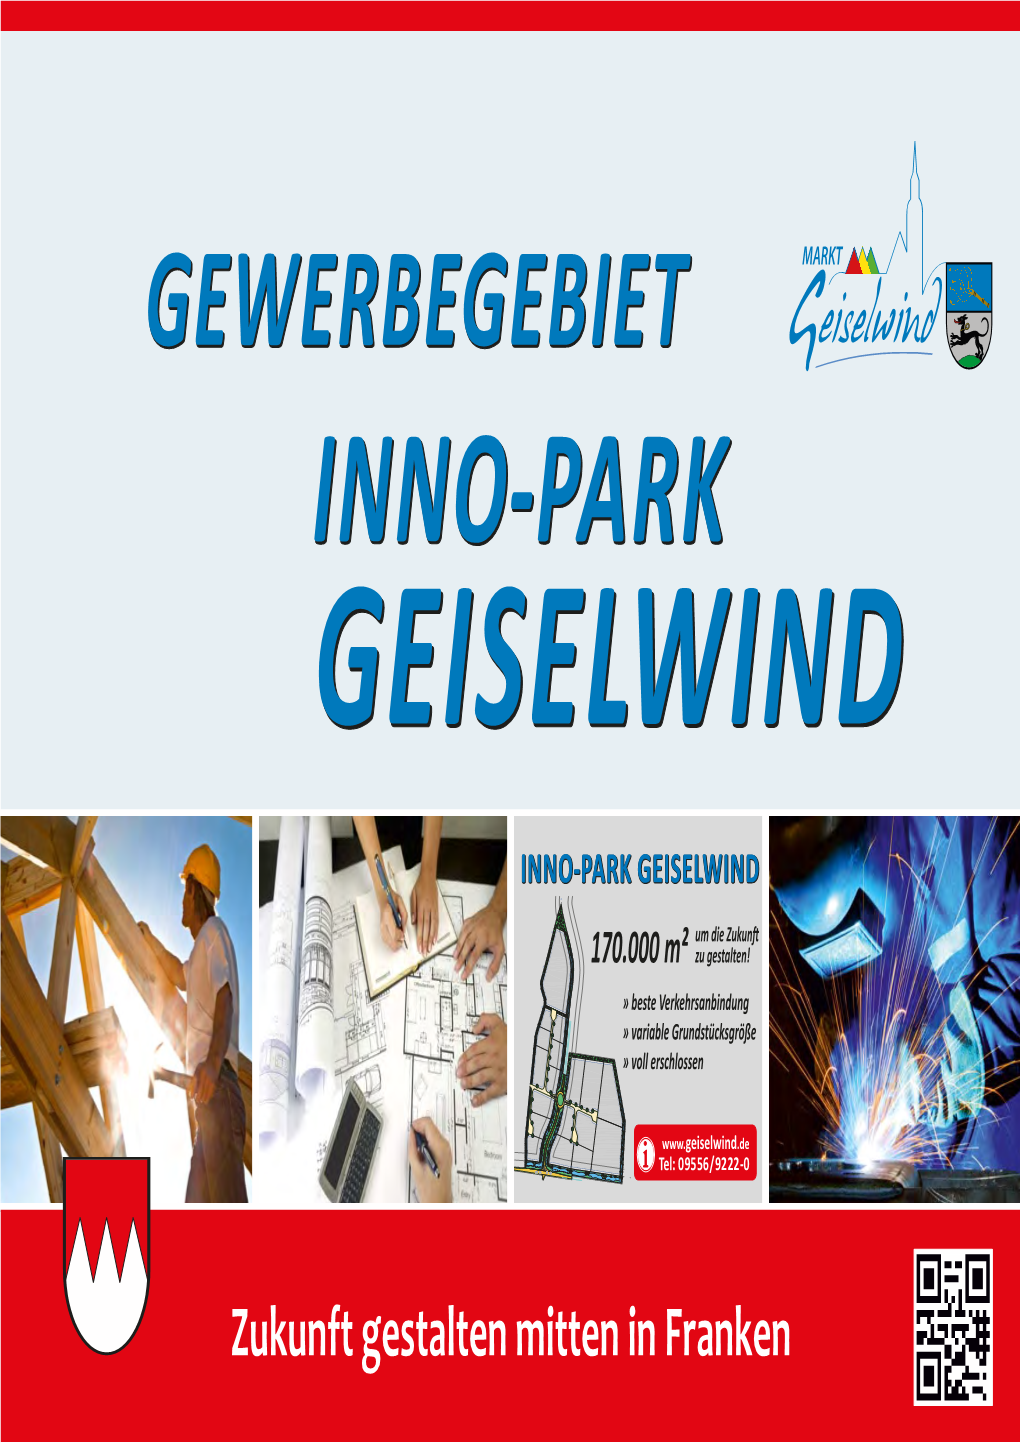 Inno-Parkinno-Park Geiselwindgeiselwind